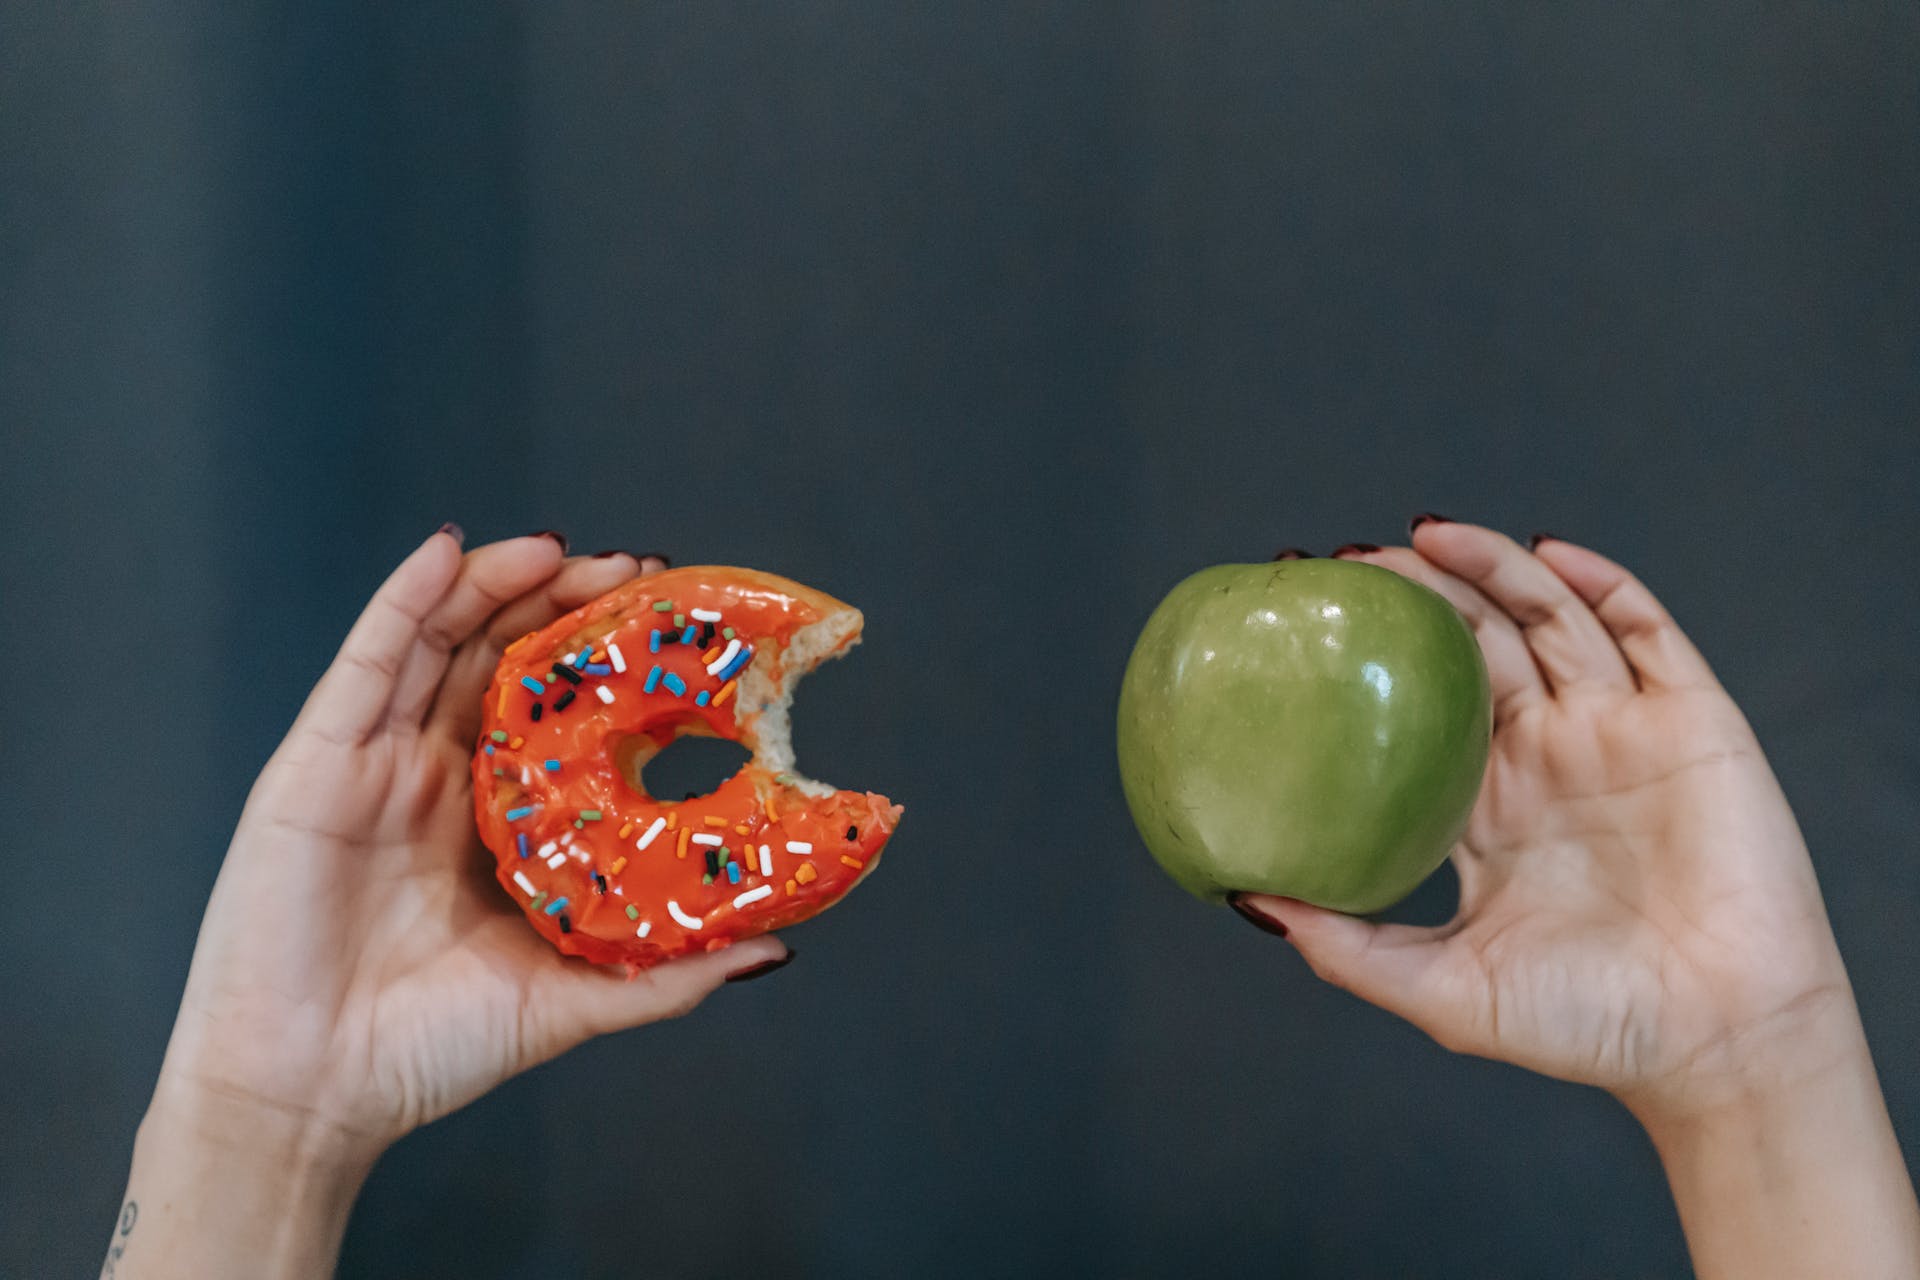 Imagen que compara comida no saludable (dona) con comida saludable (manzana)